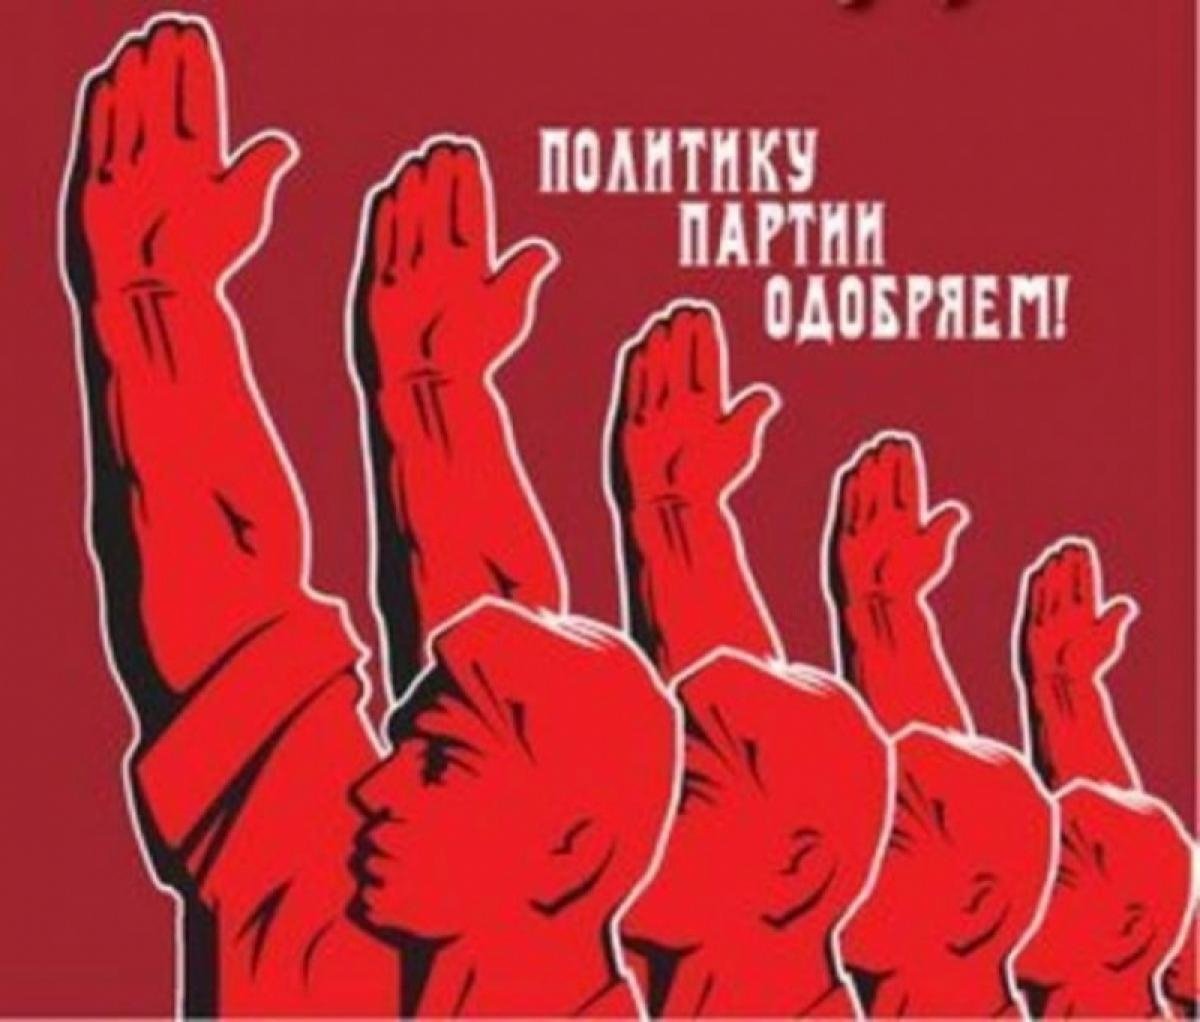 Проявить партия. Советские политические плакаты. Партийные лозунги. Коммунистические плакаты. Советские лозунги и плакаты.